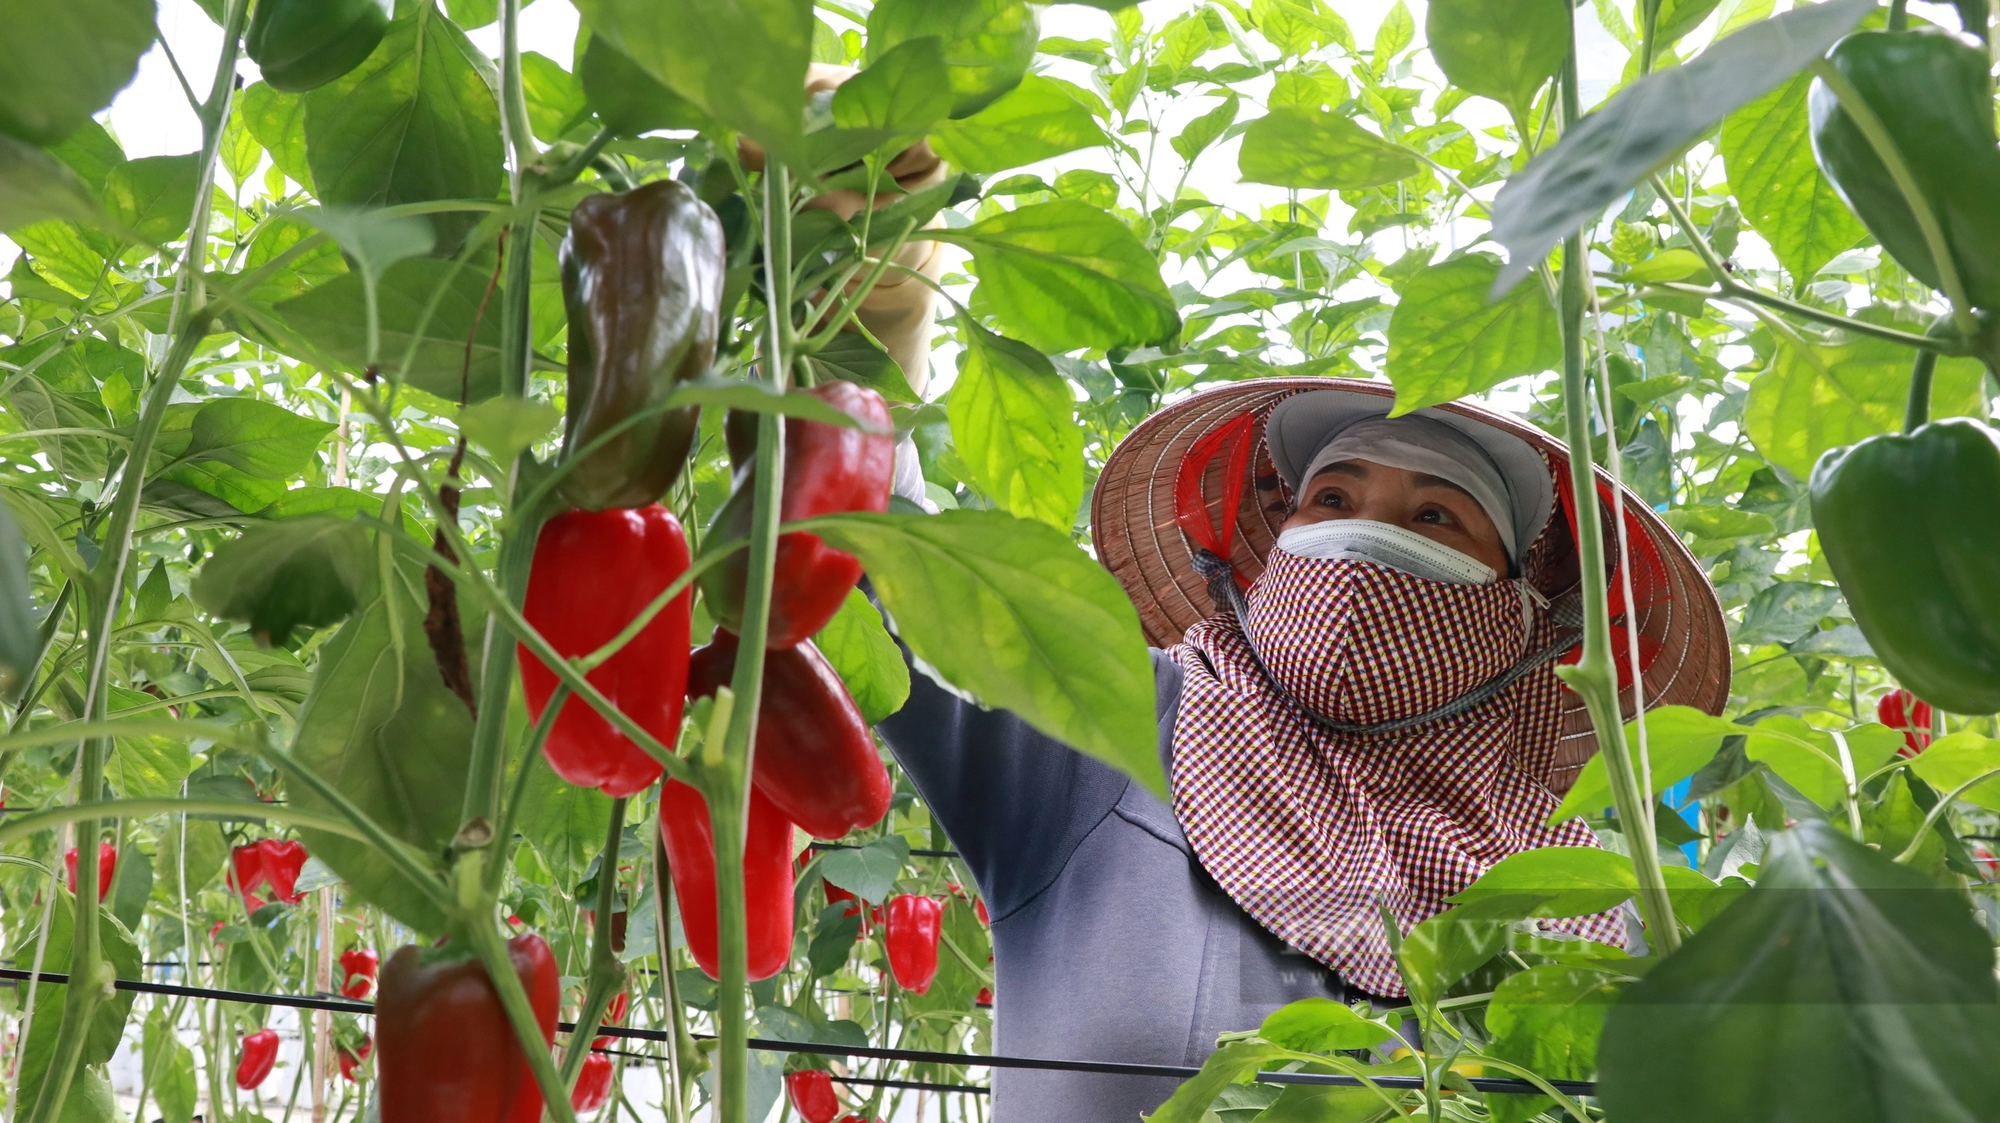 Trồng ớt tiêu chuẩn toàn cầu ở Lâm Đồng kiểu gì mà vườn tốt um, nông dân thu hàng trăm triệu?- Ảnh 2.